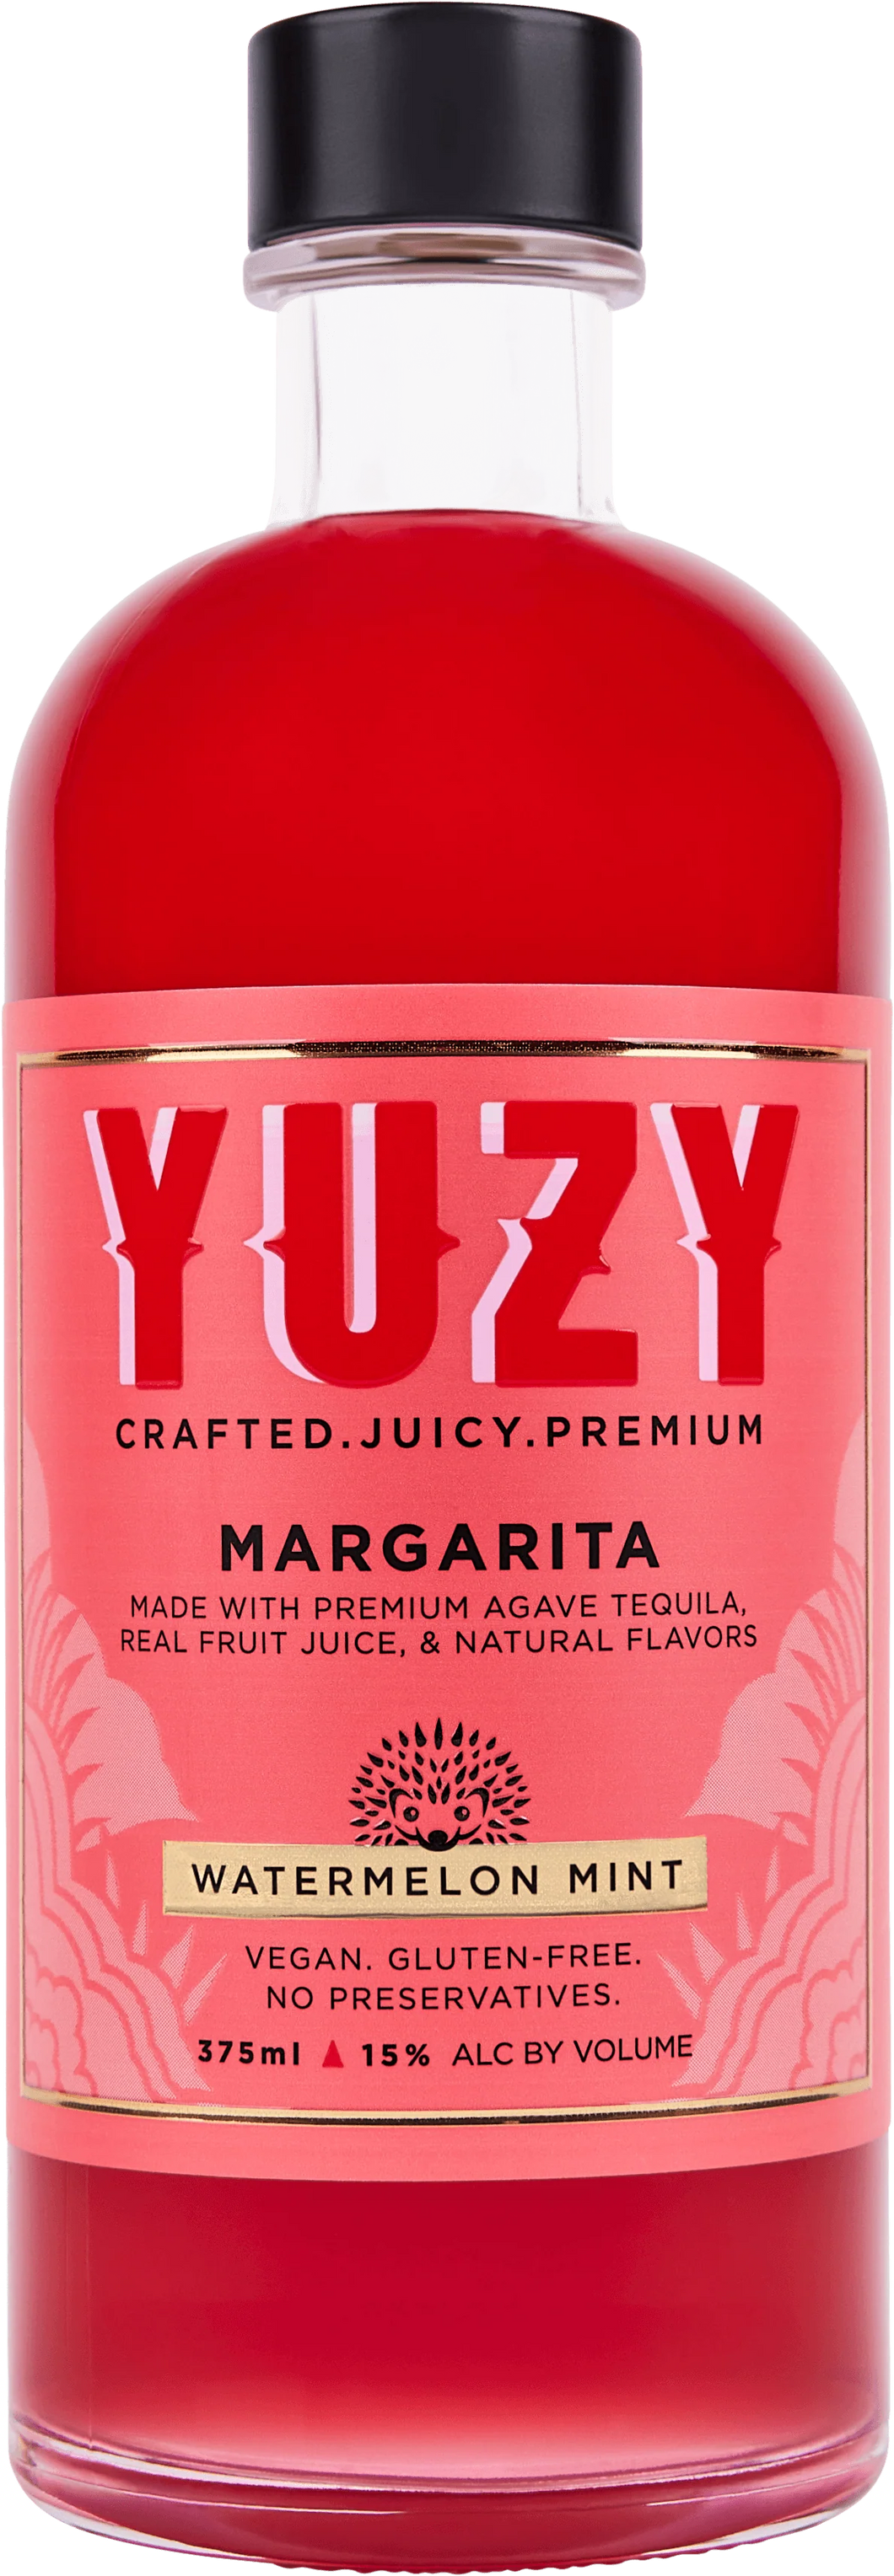 Yuzy Margarita Watermelon Mint